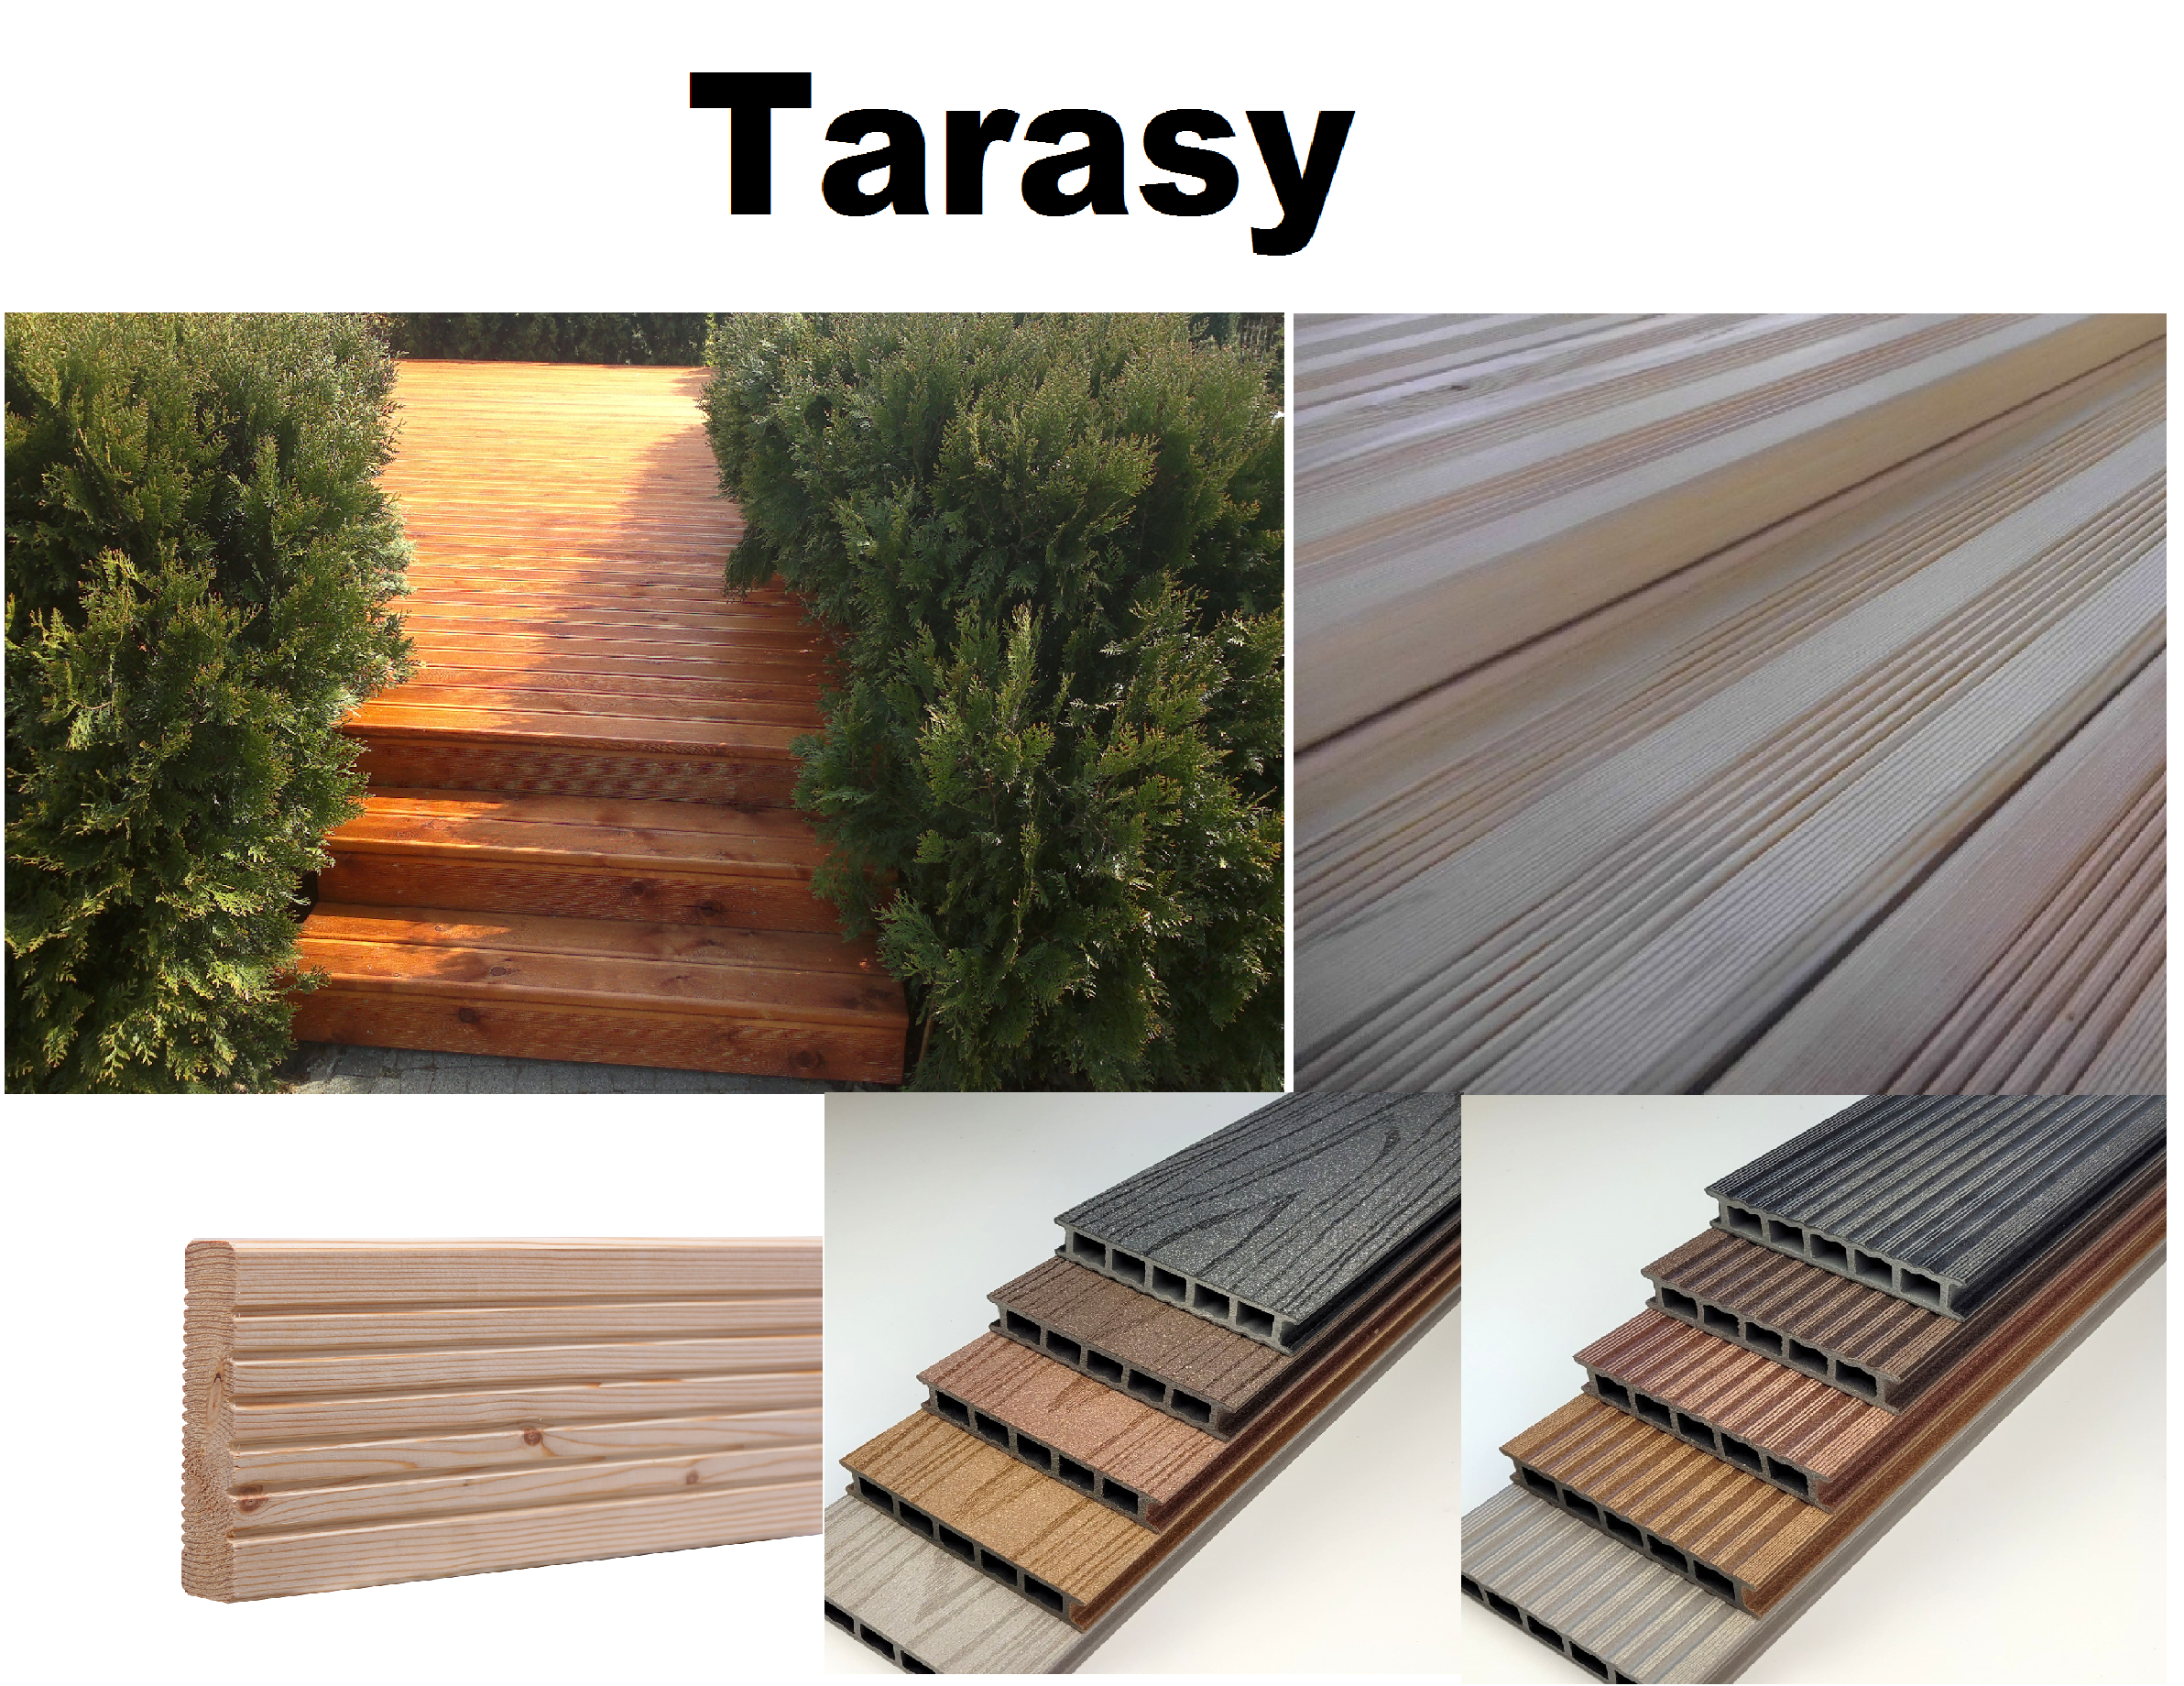 Tarasy